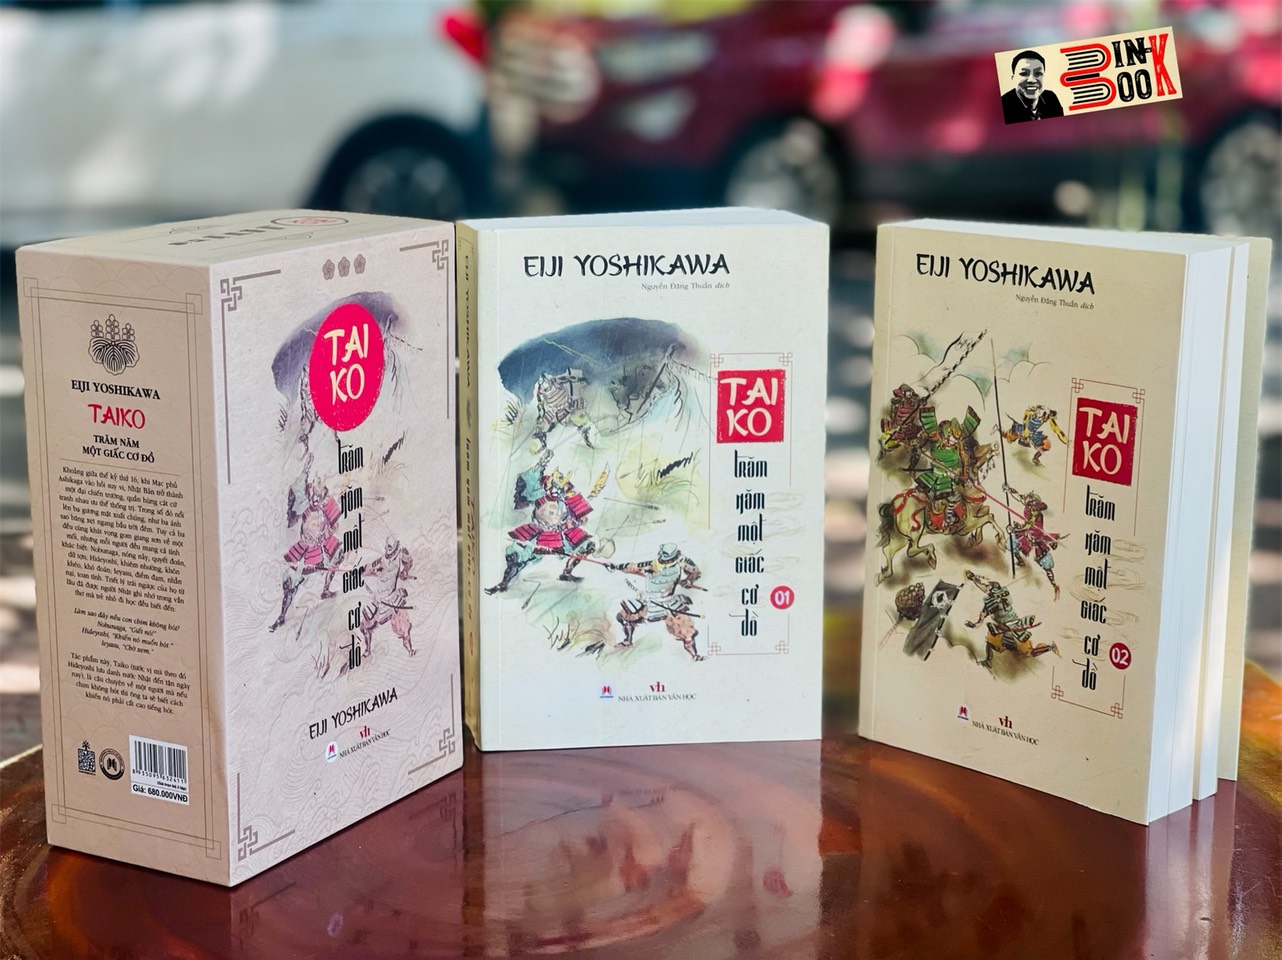 (Trọn bộ boxset 2 tập, kèm tranh minh họa in màu) (Eiji Yoshikawa - Tiểu thuyết gia lịch sử xuất sắc nhất Nhật Bản) TAIKO - TRĂM NĂM MỘT GIẤC CƠ ĐỒ – Eiji Yoshikawa - Nguyễn Đăng Thuần dịch -  Huy Hoang Books phát hành - Nxb Văn Học (Bìa mềm)